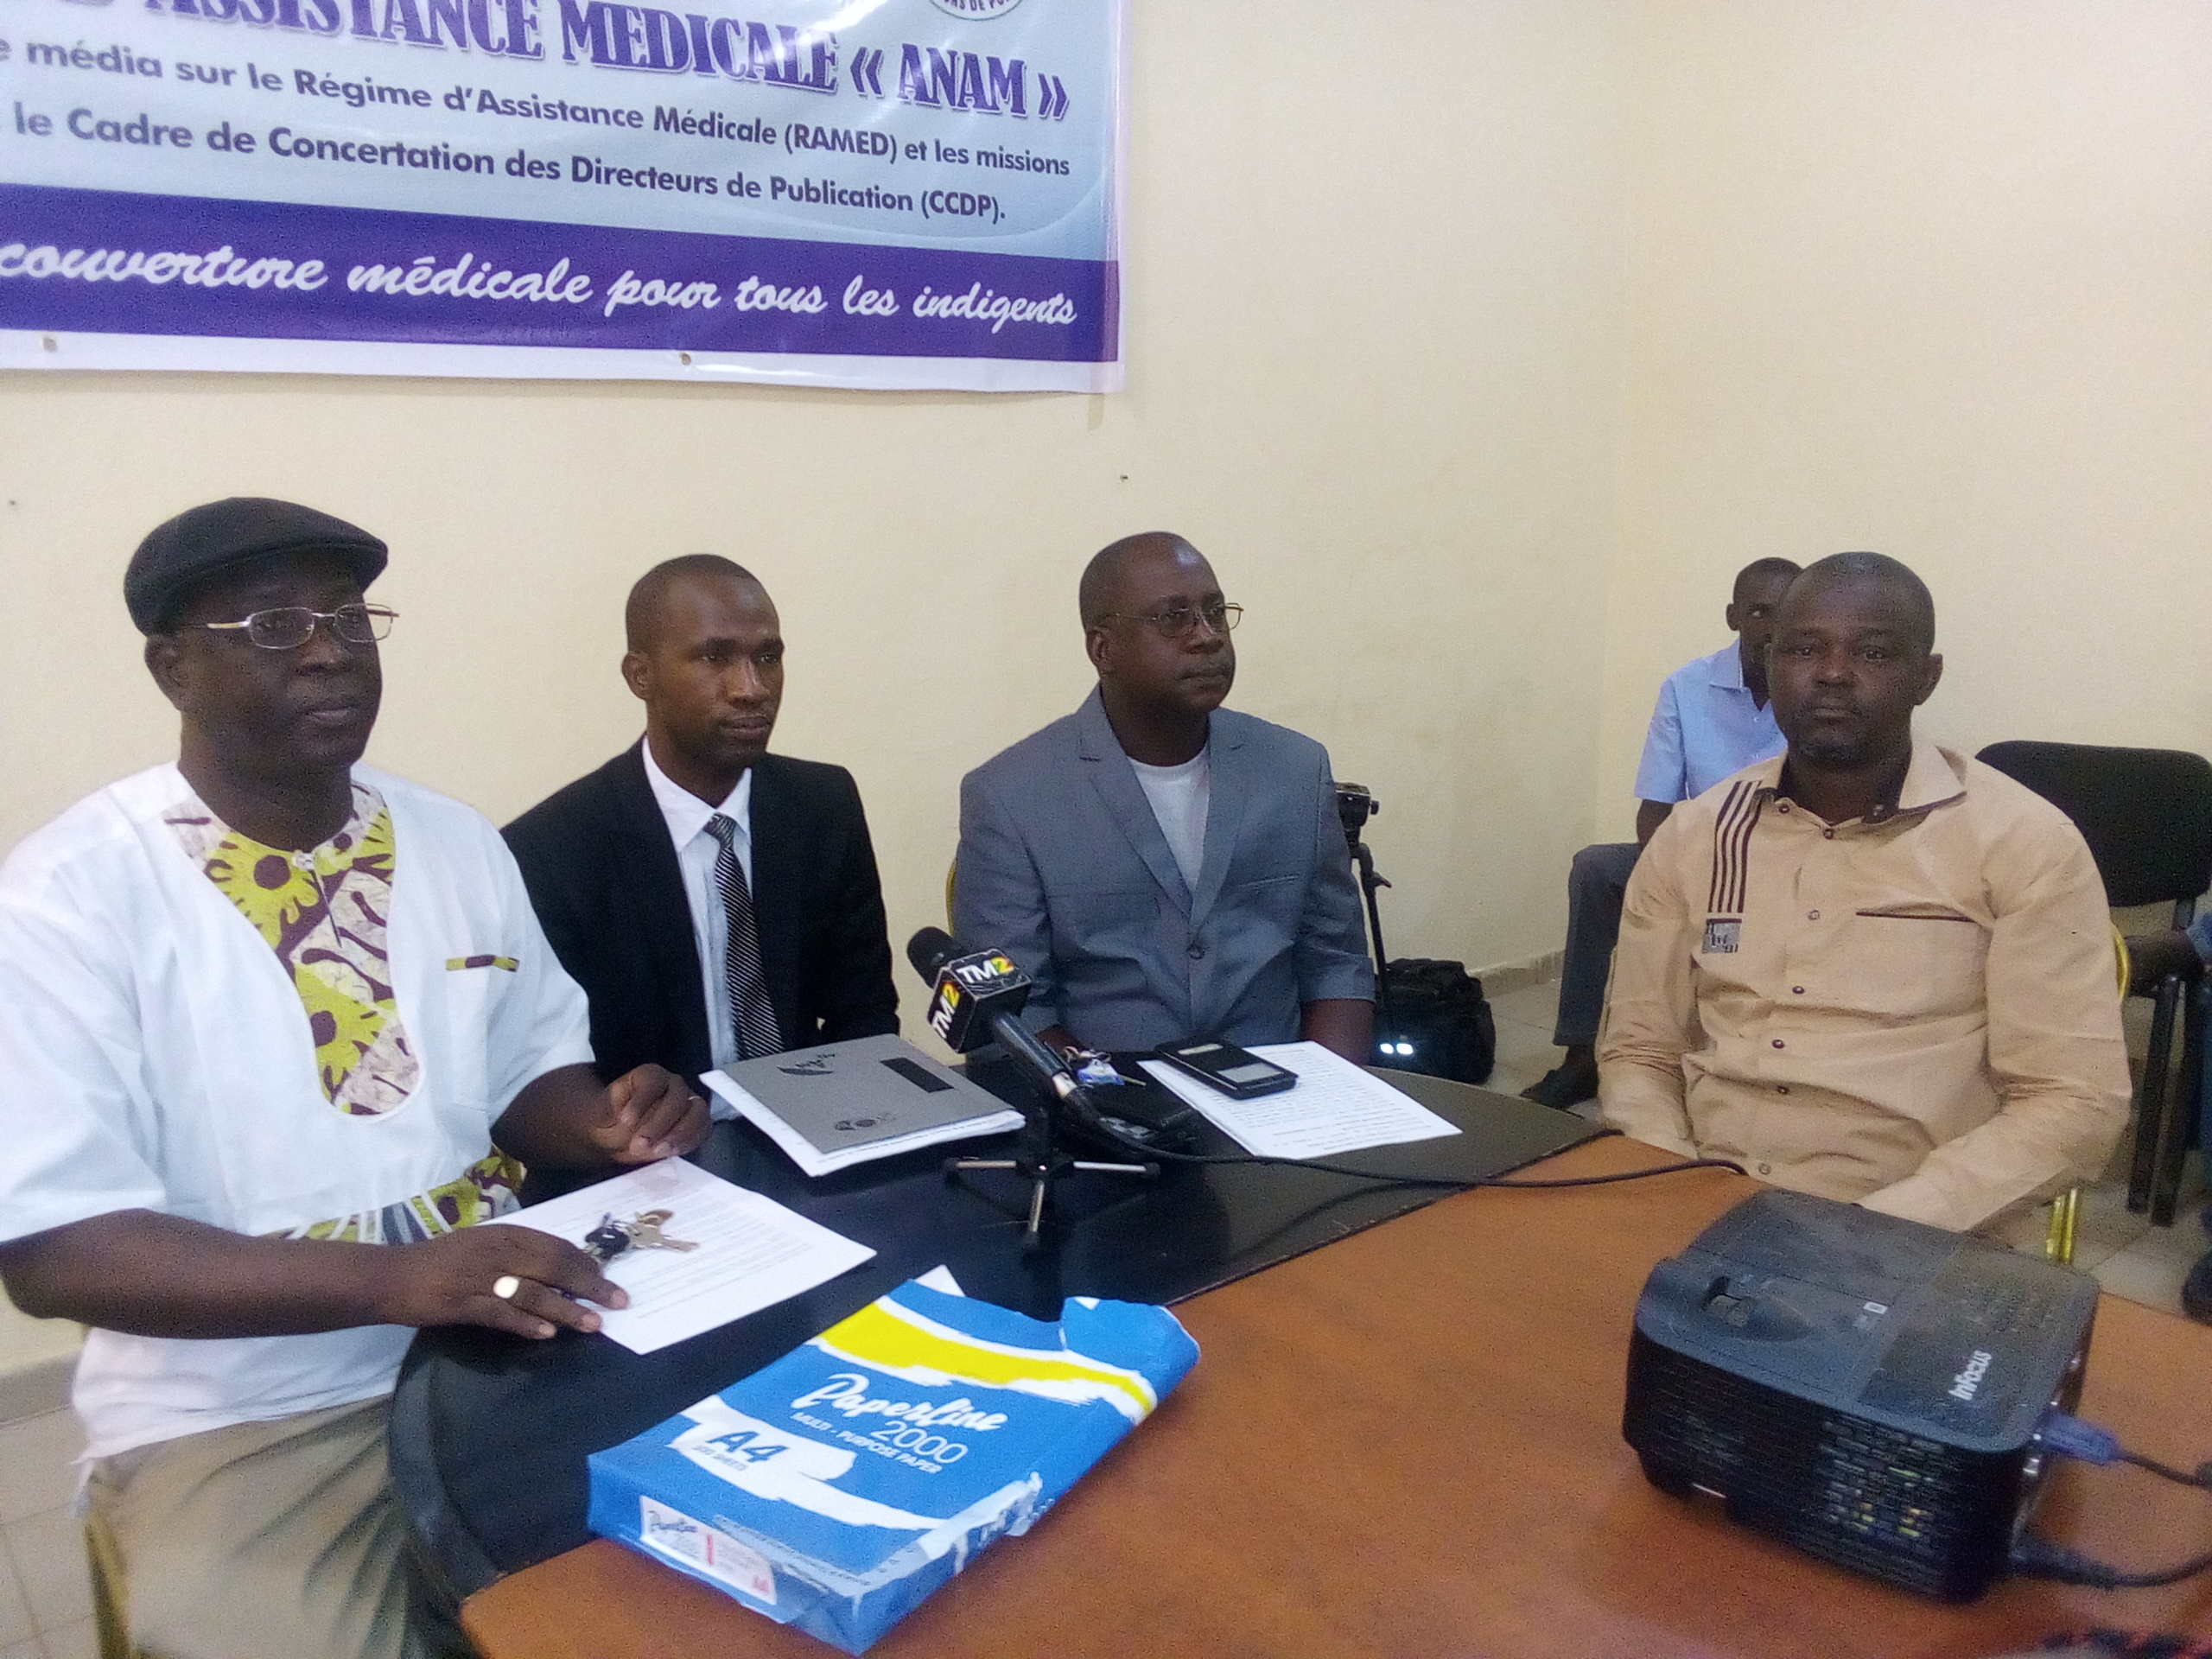 Partenariat ANAM-CCDP : Les hommes de medias s’imprègnent des missions de l’ANAM et de l’objectif du RAMED